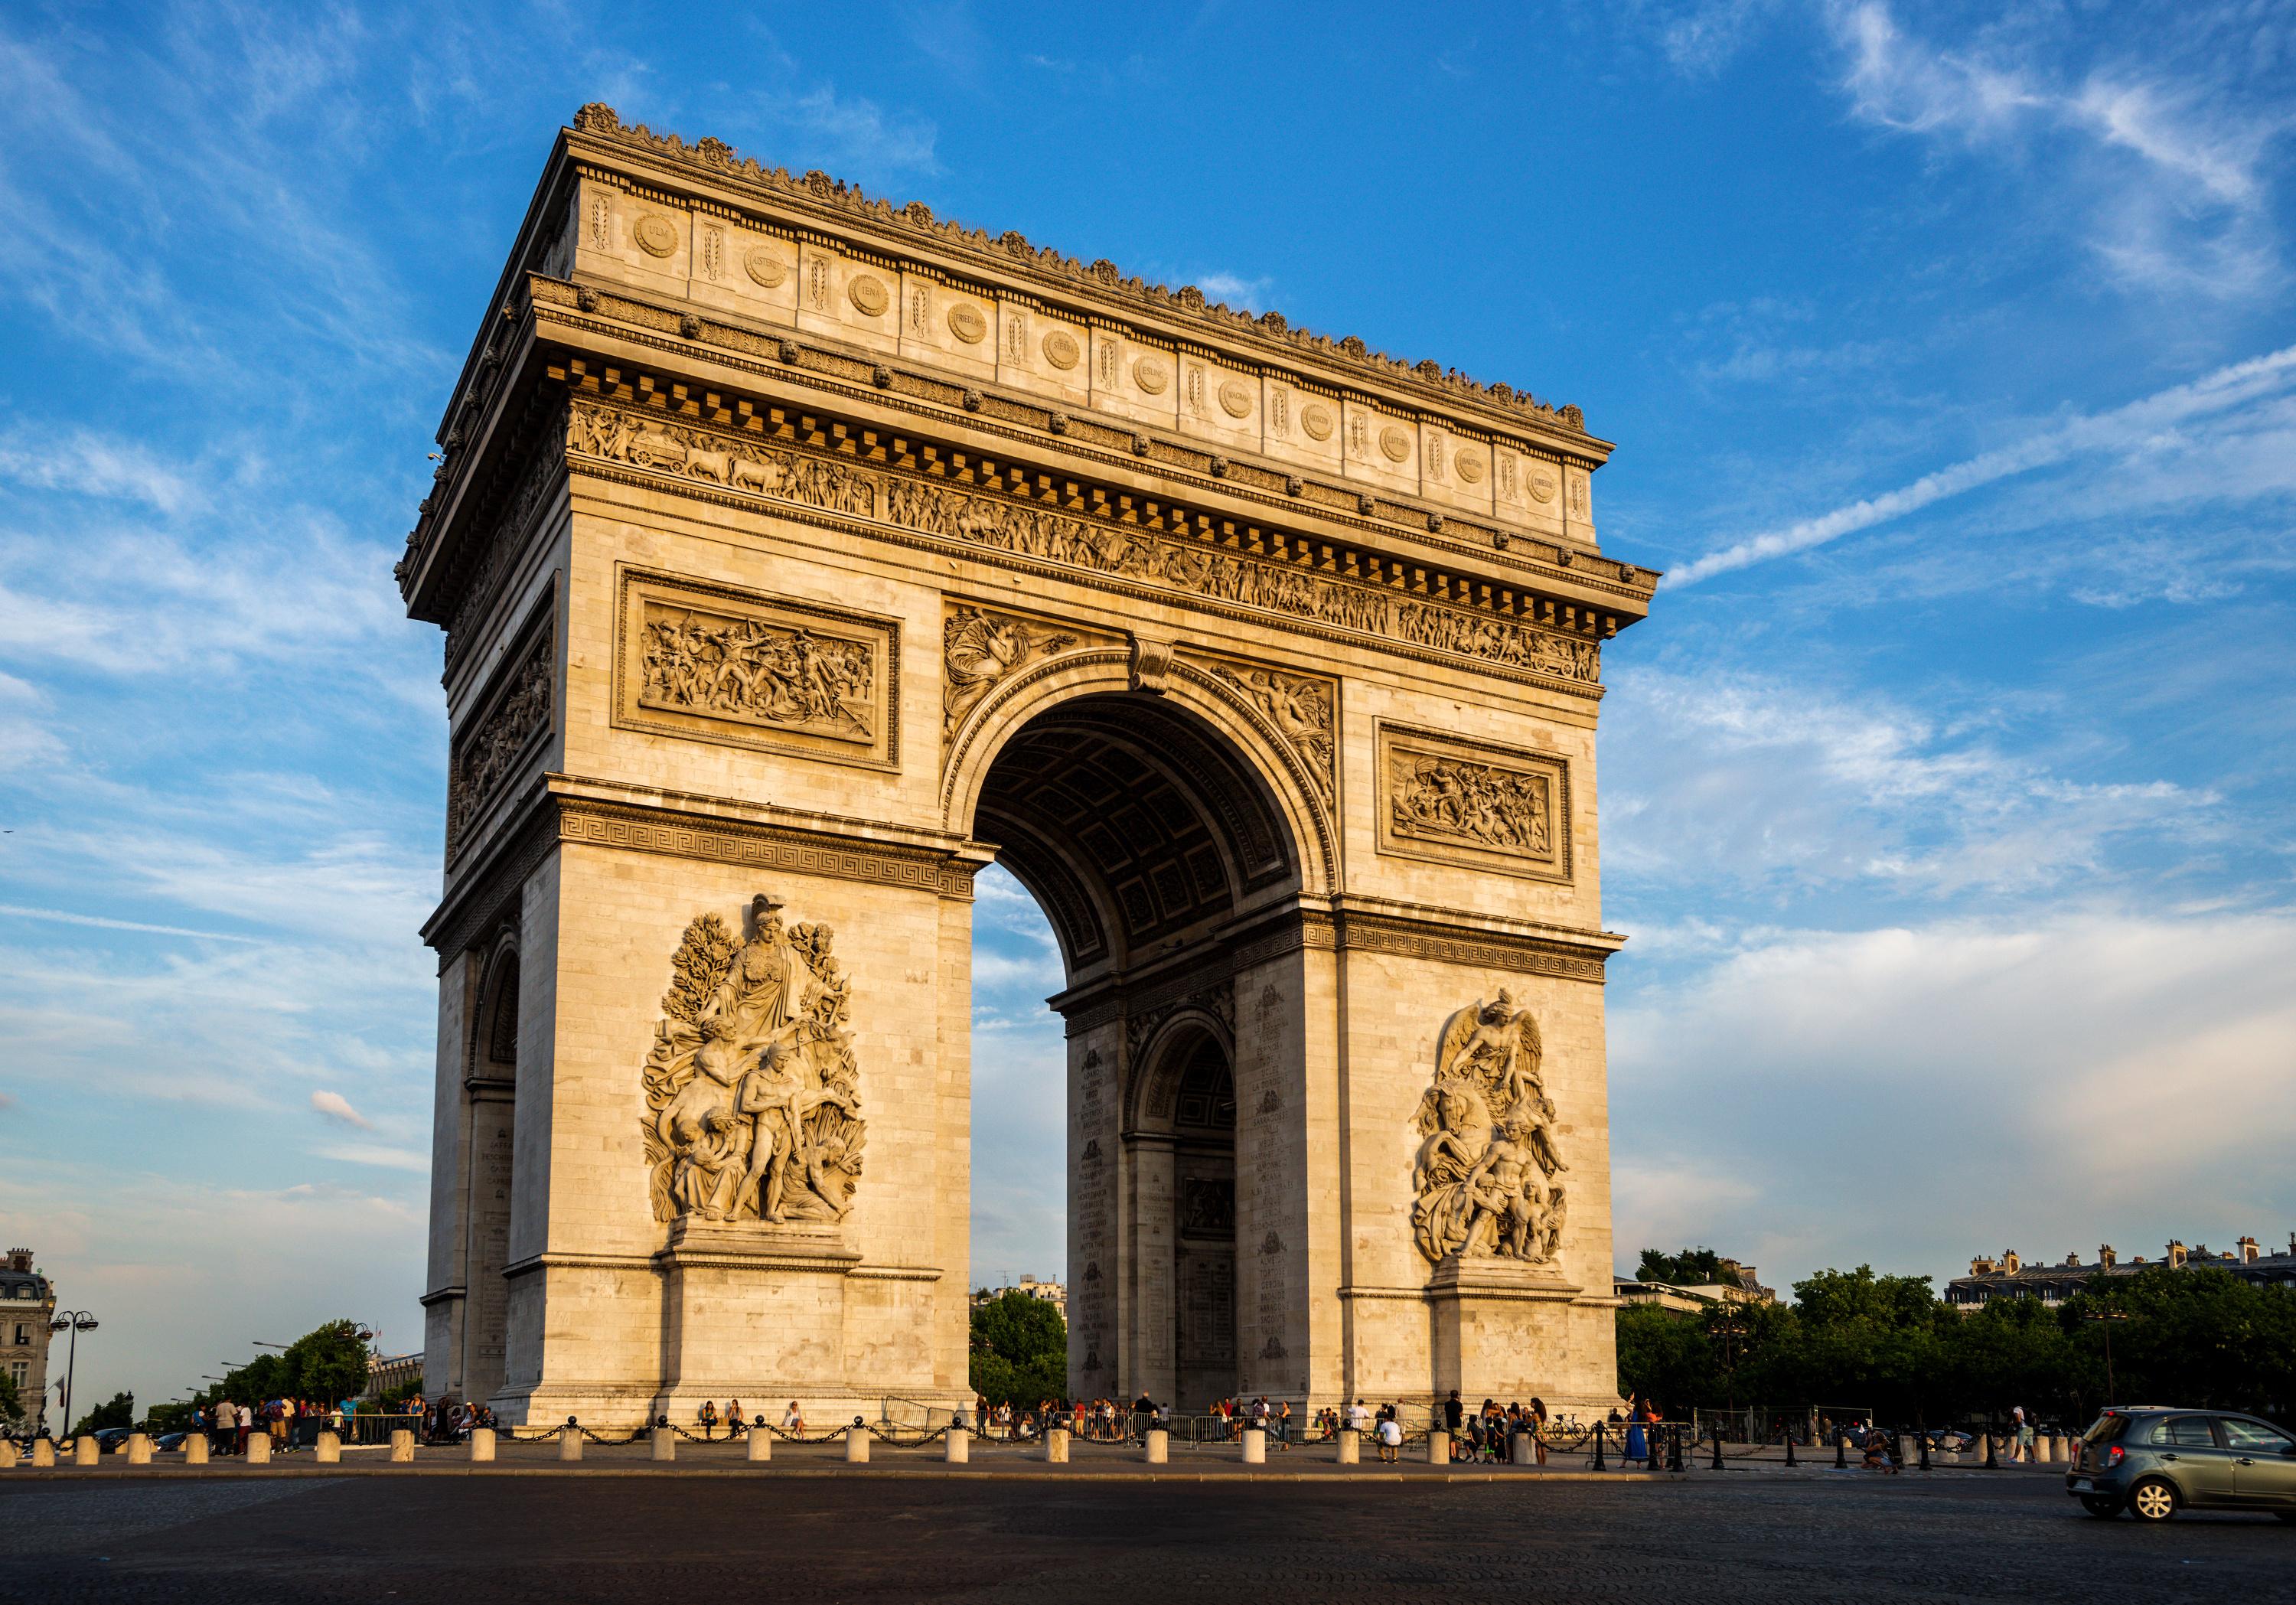 Appart hotel proche de l'Arc de triomphe à Paris